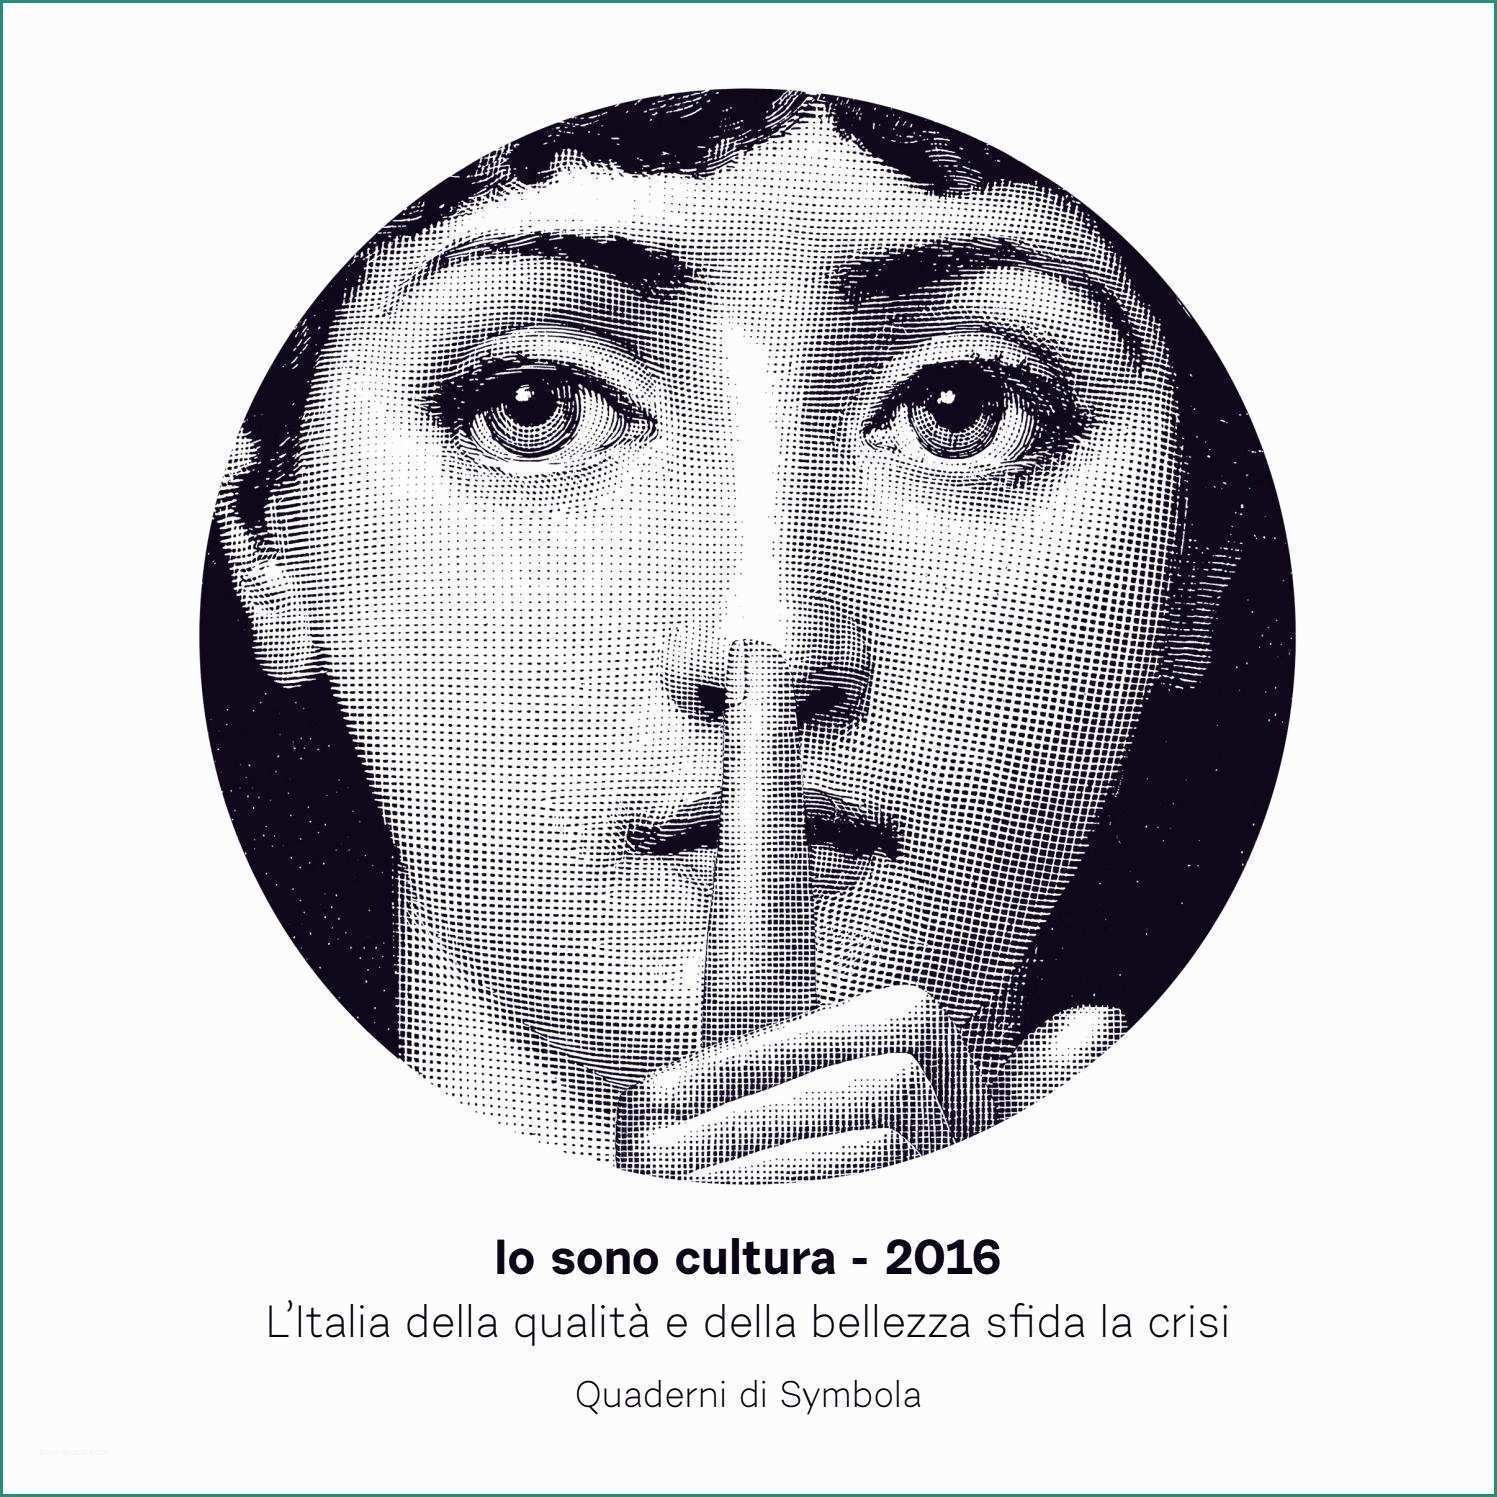 Timvision Vs Netflix E Io sono Cultura 2016 by Fondazione Symbola issuu